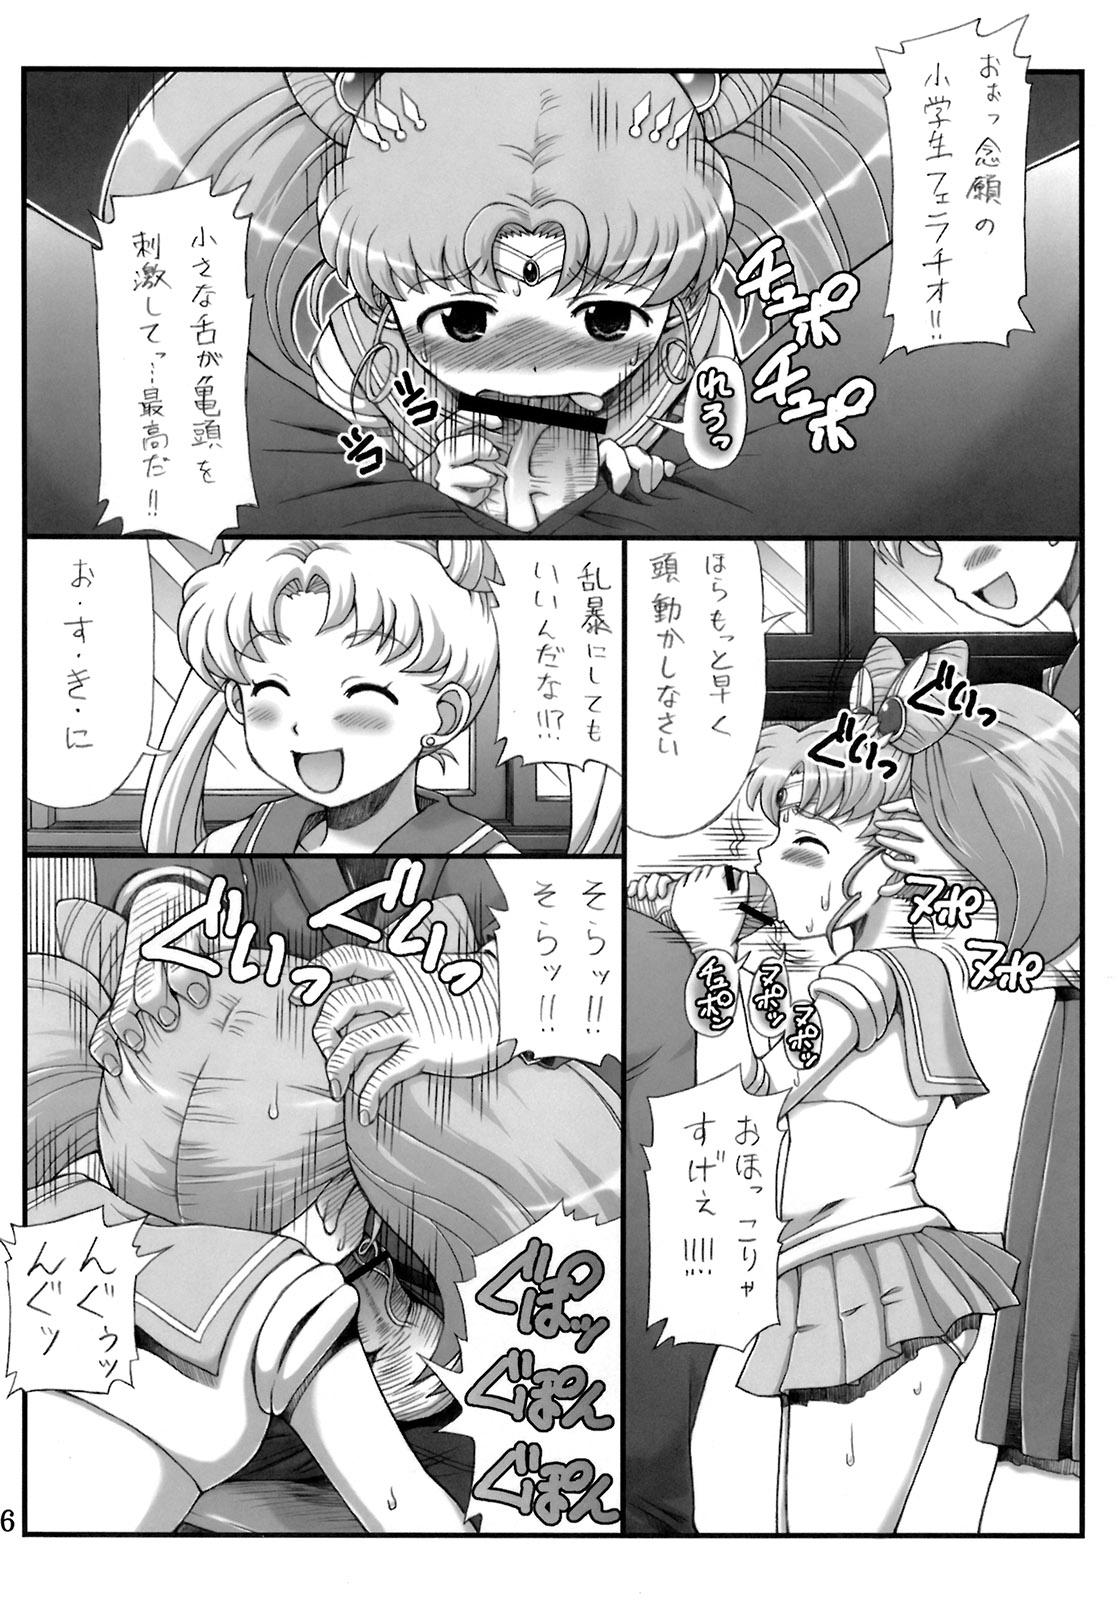 Foreskin Lovely Battle Suit HALF & HALF - Sailor moon Sakura taisen Imvu - Page 5